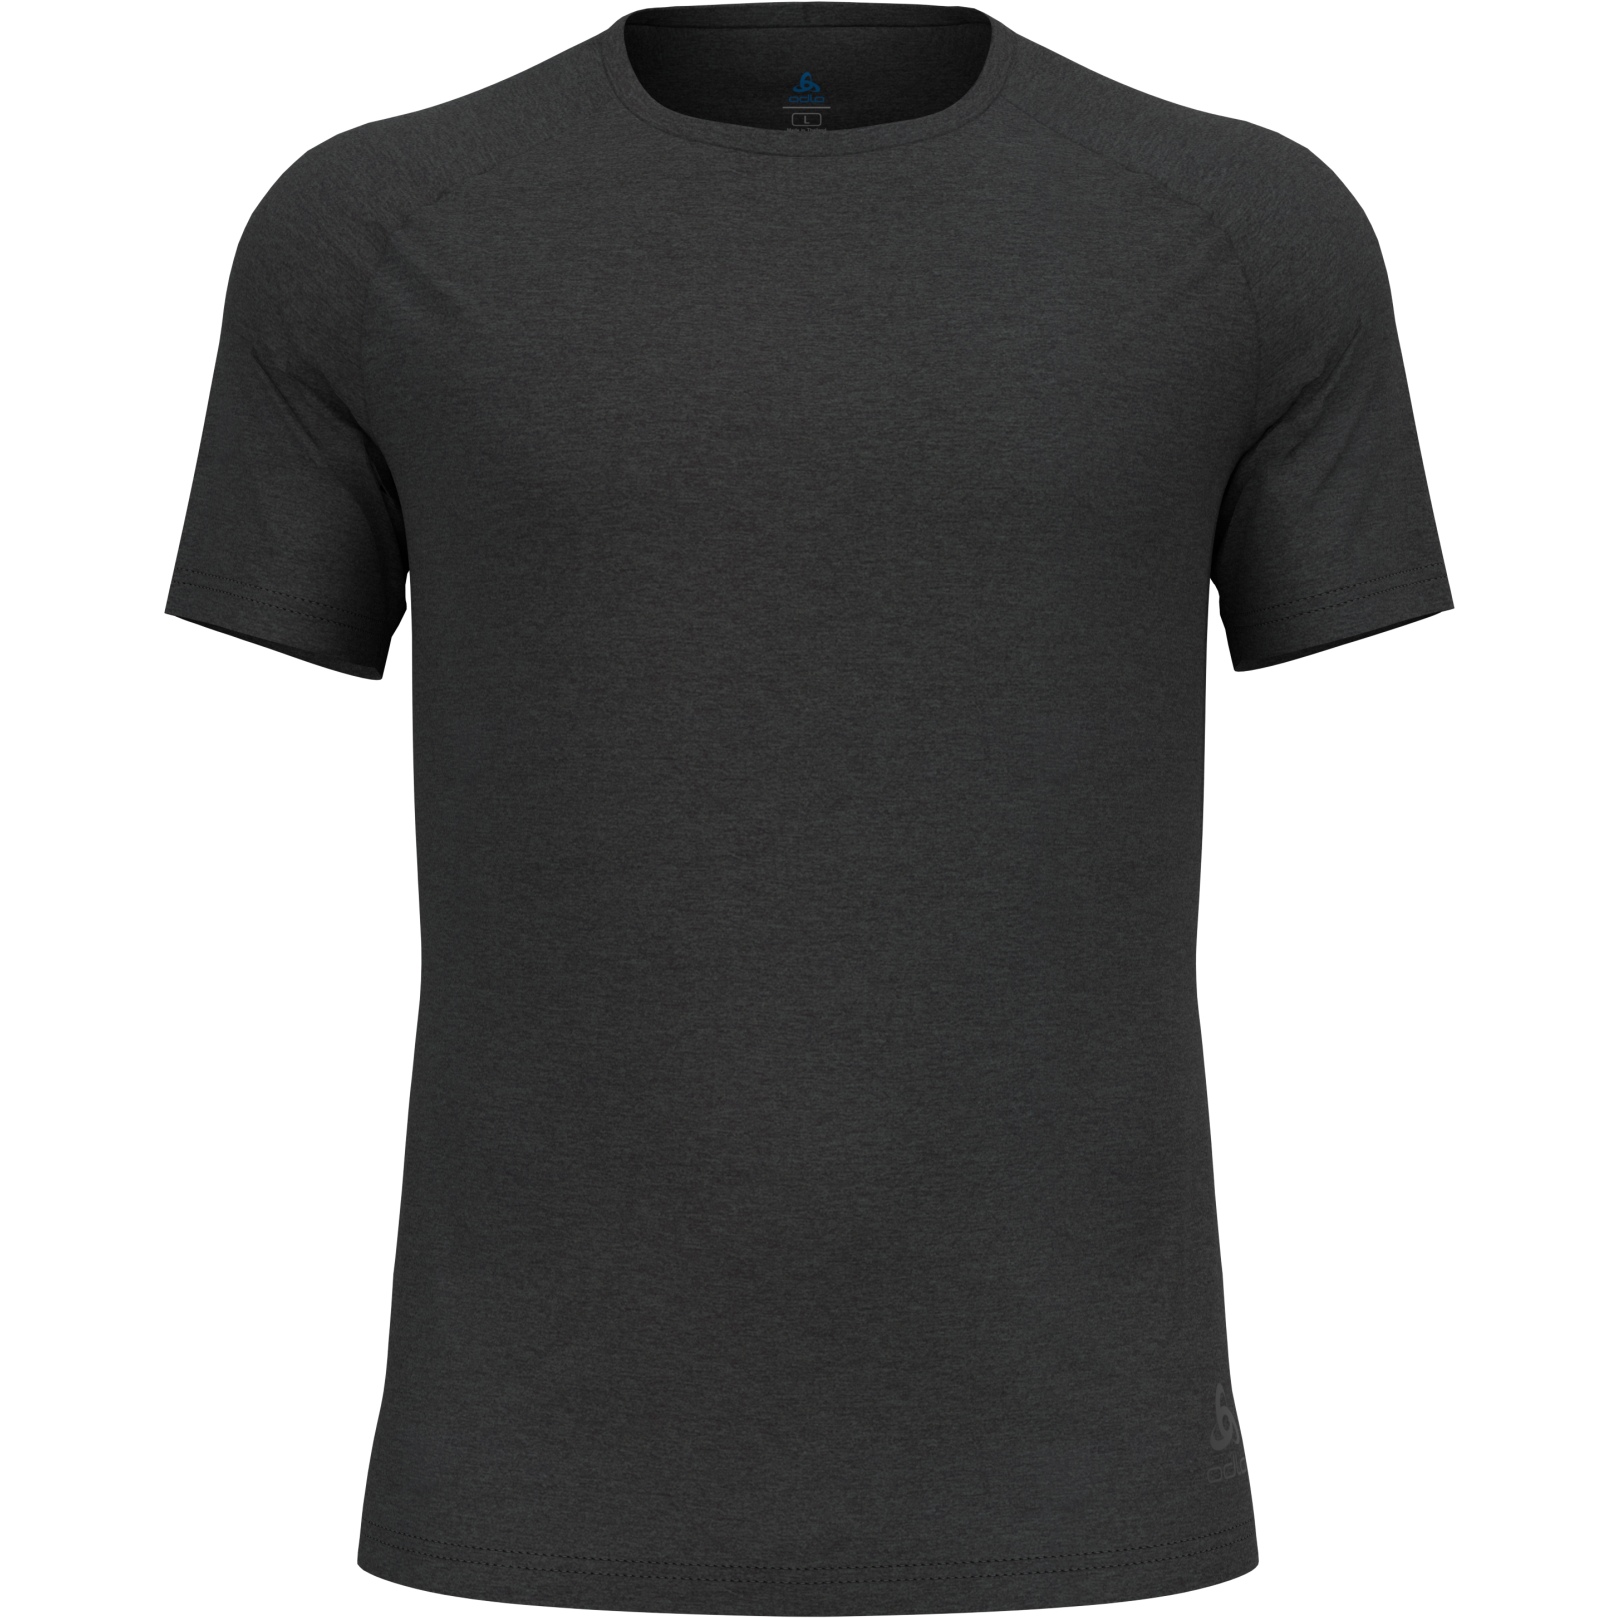 Productfoto van Odlo Active 365 T-Shirt Heren - black melange